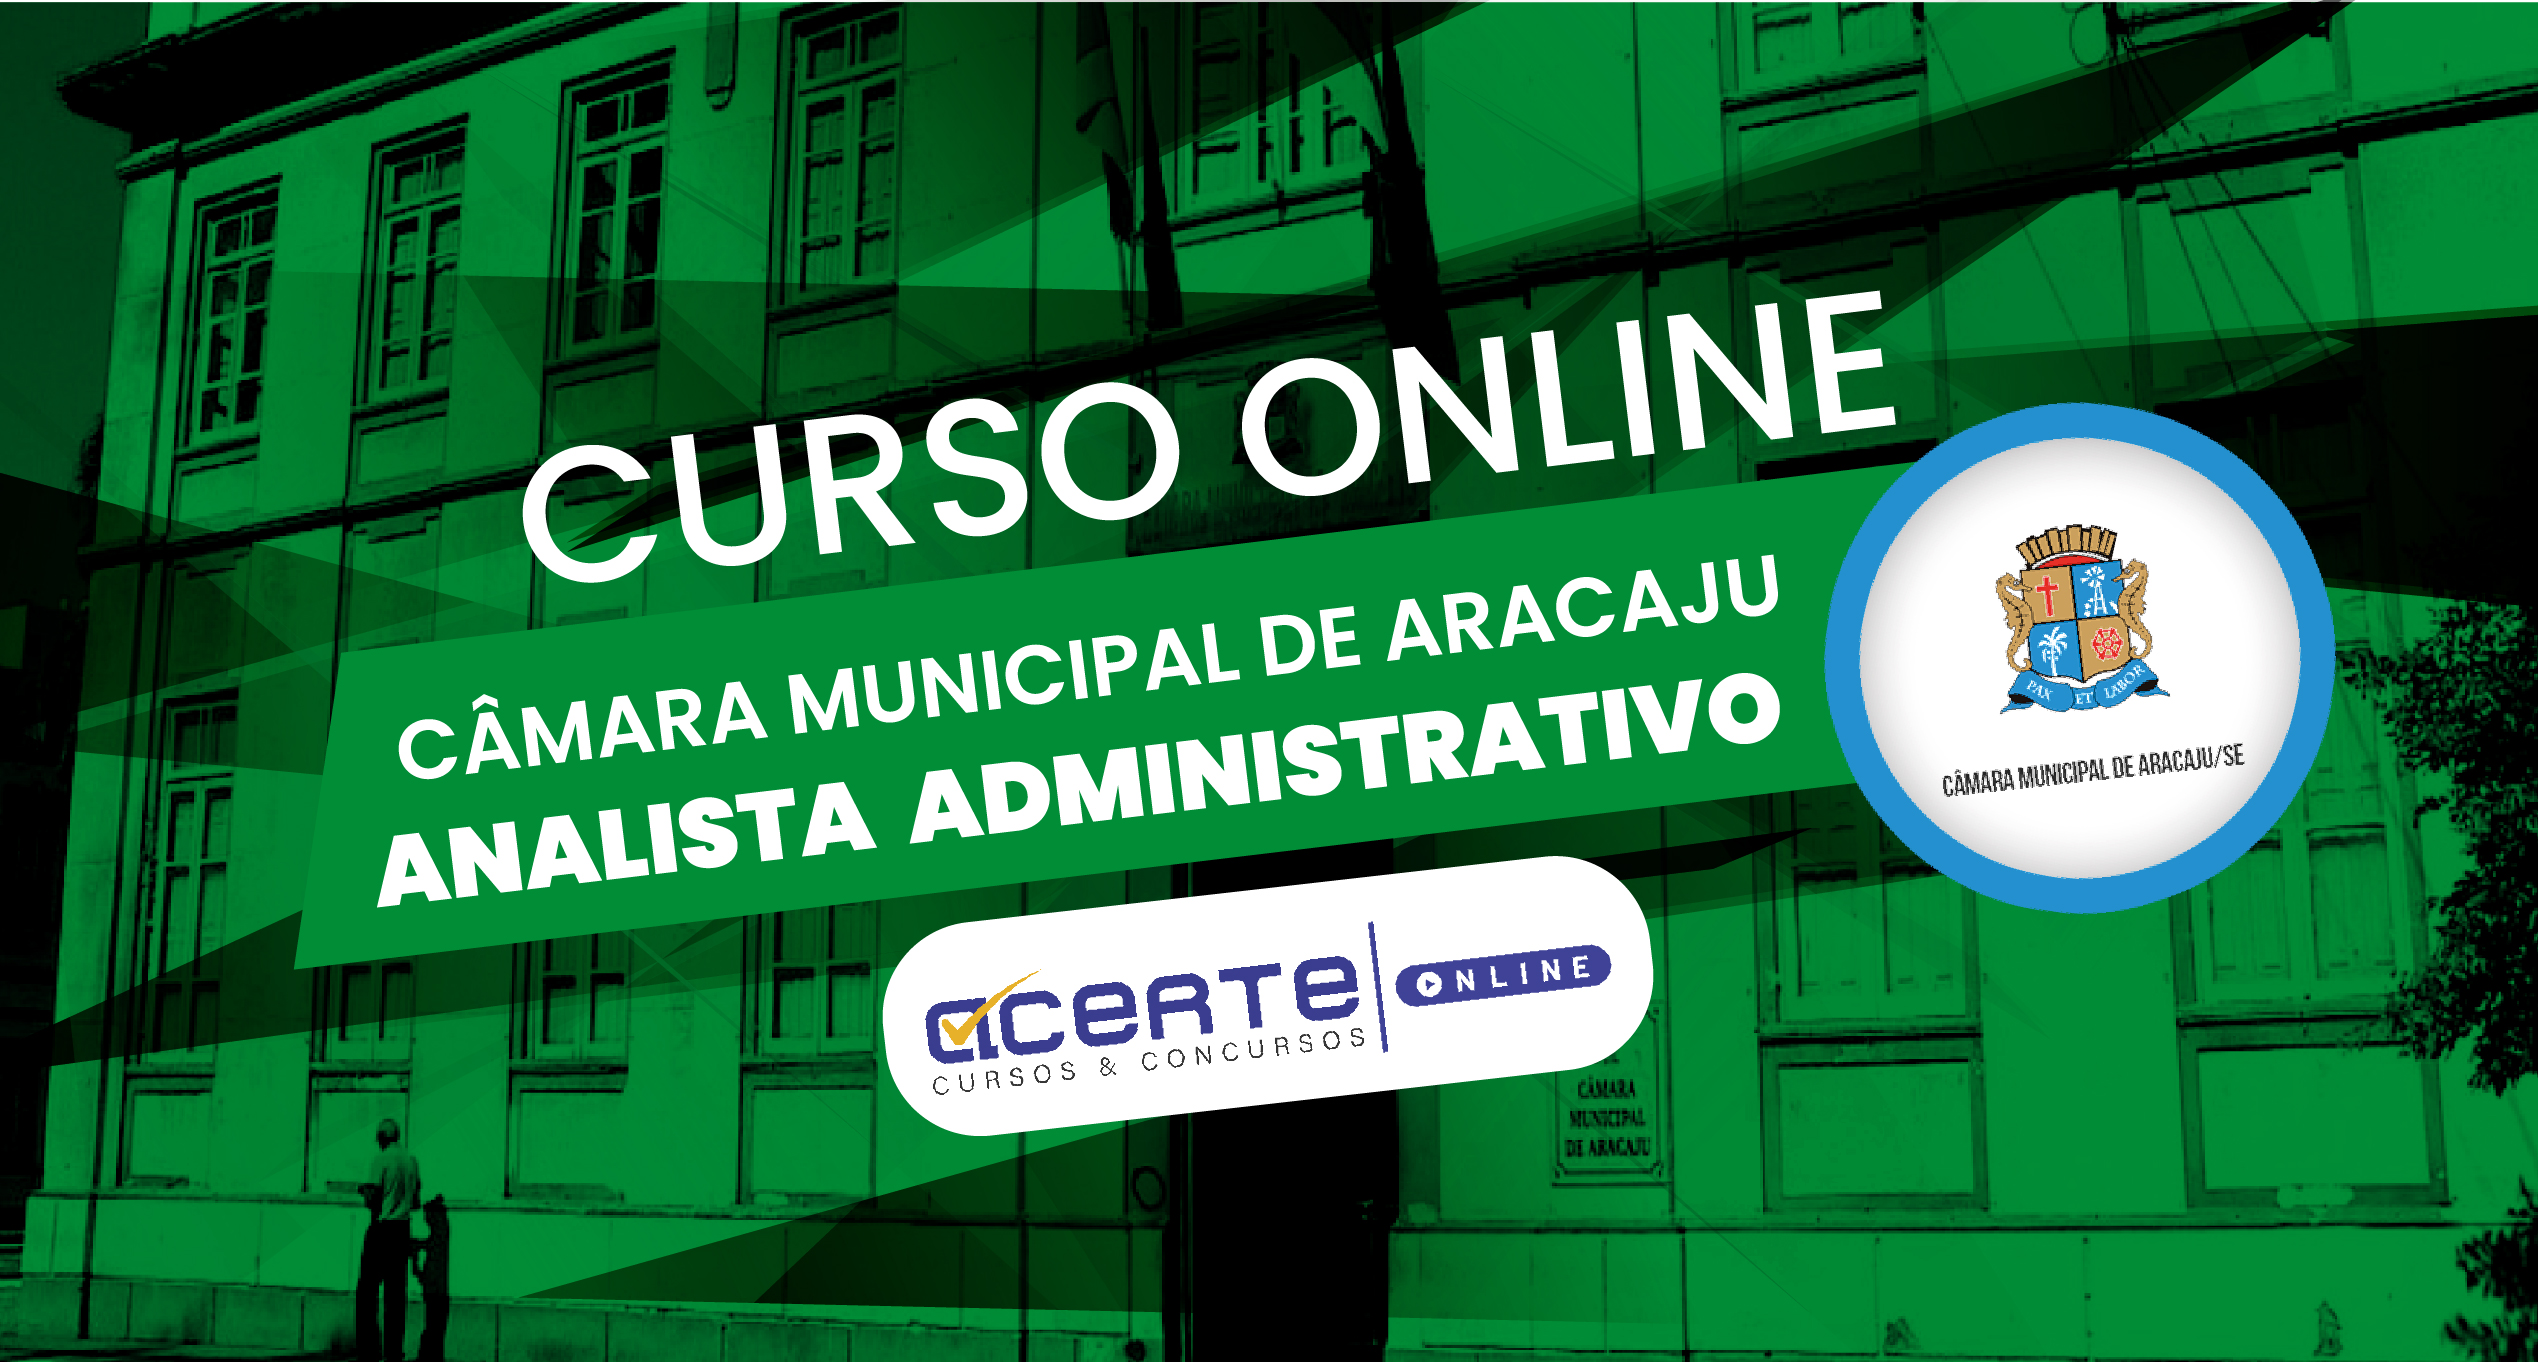 Câmara Municipal de Aracaju - Analista Administrativo